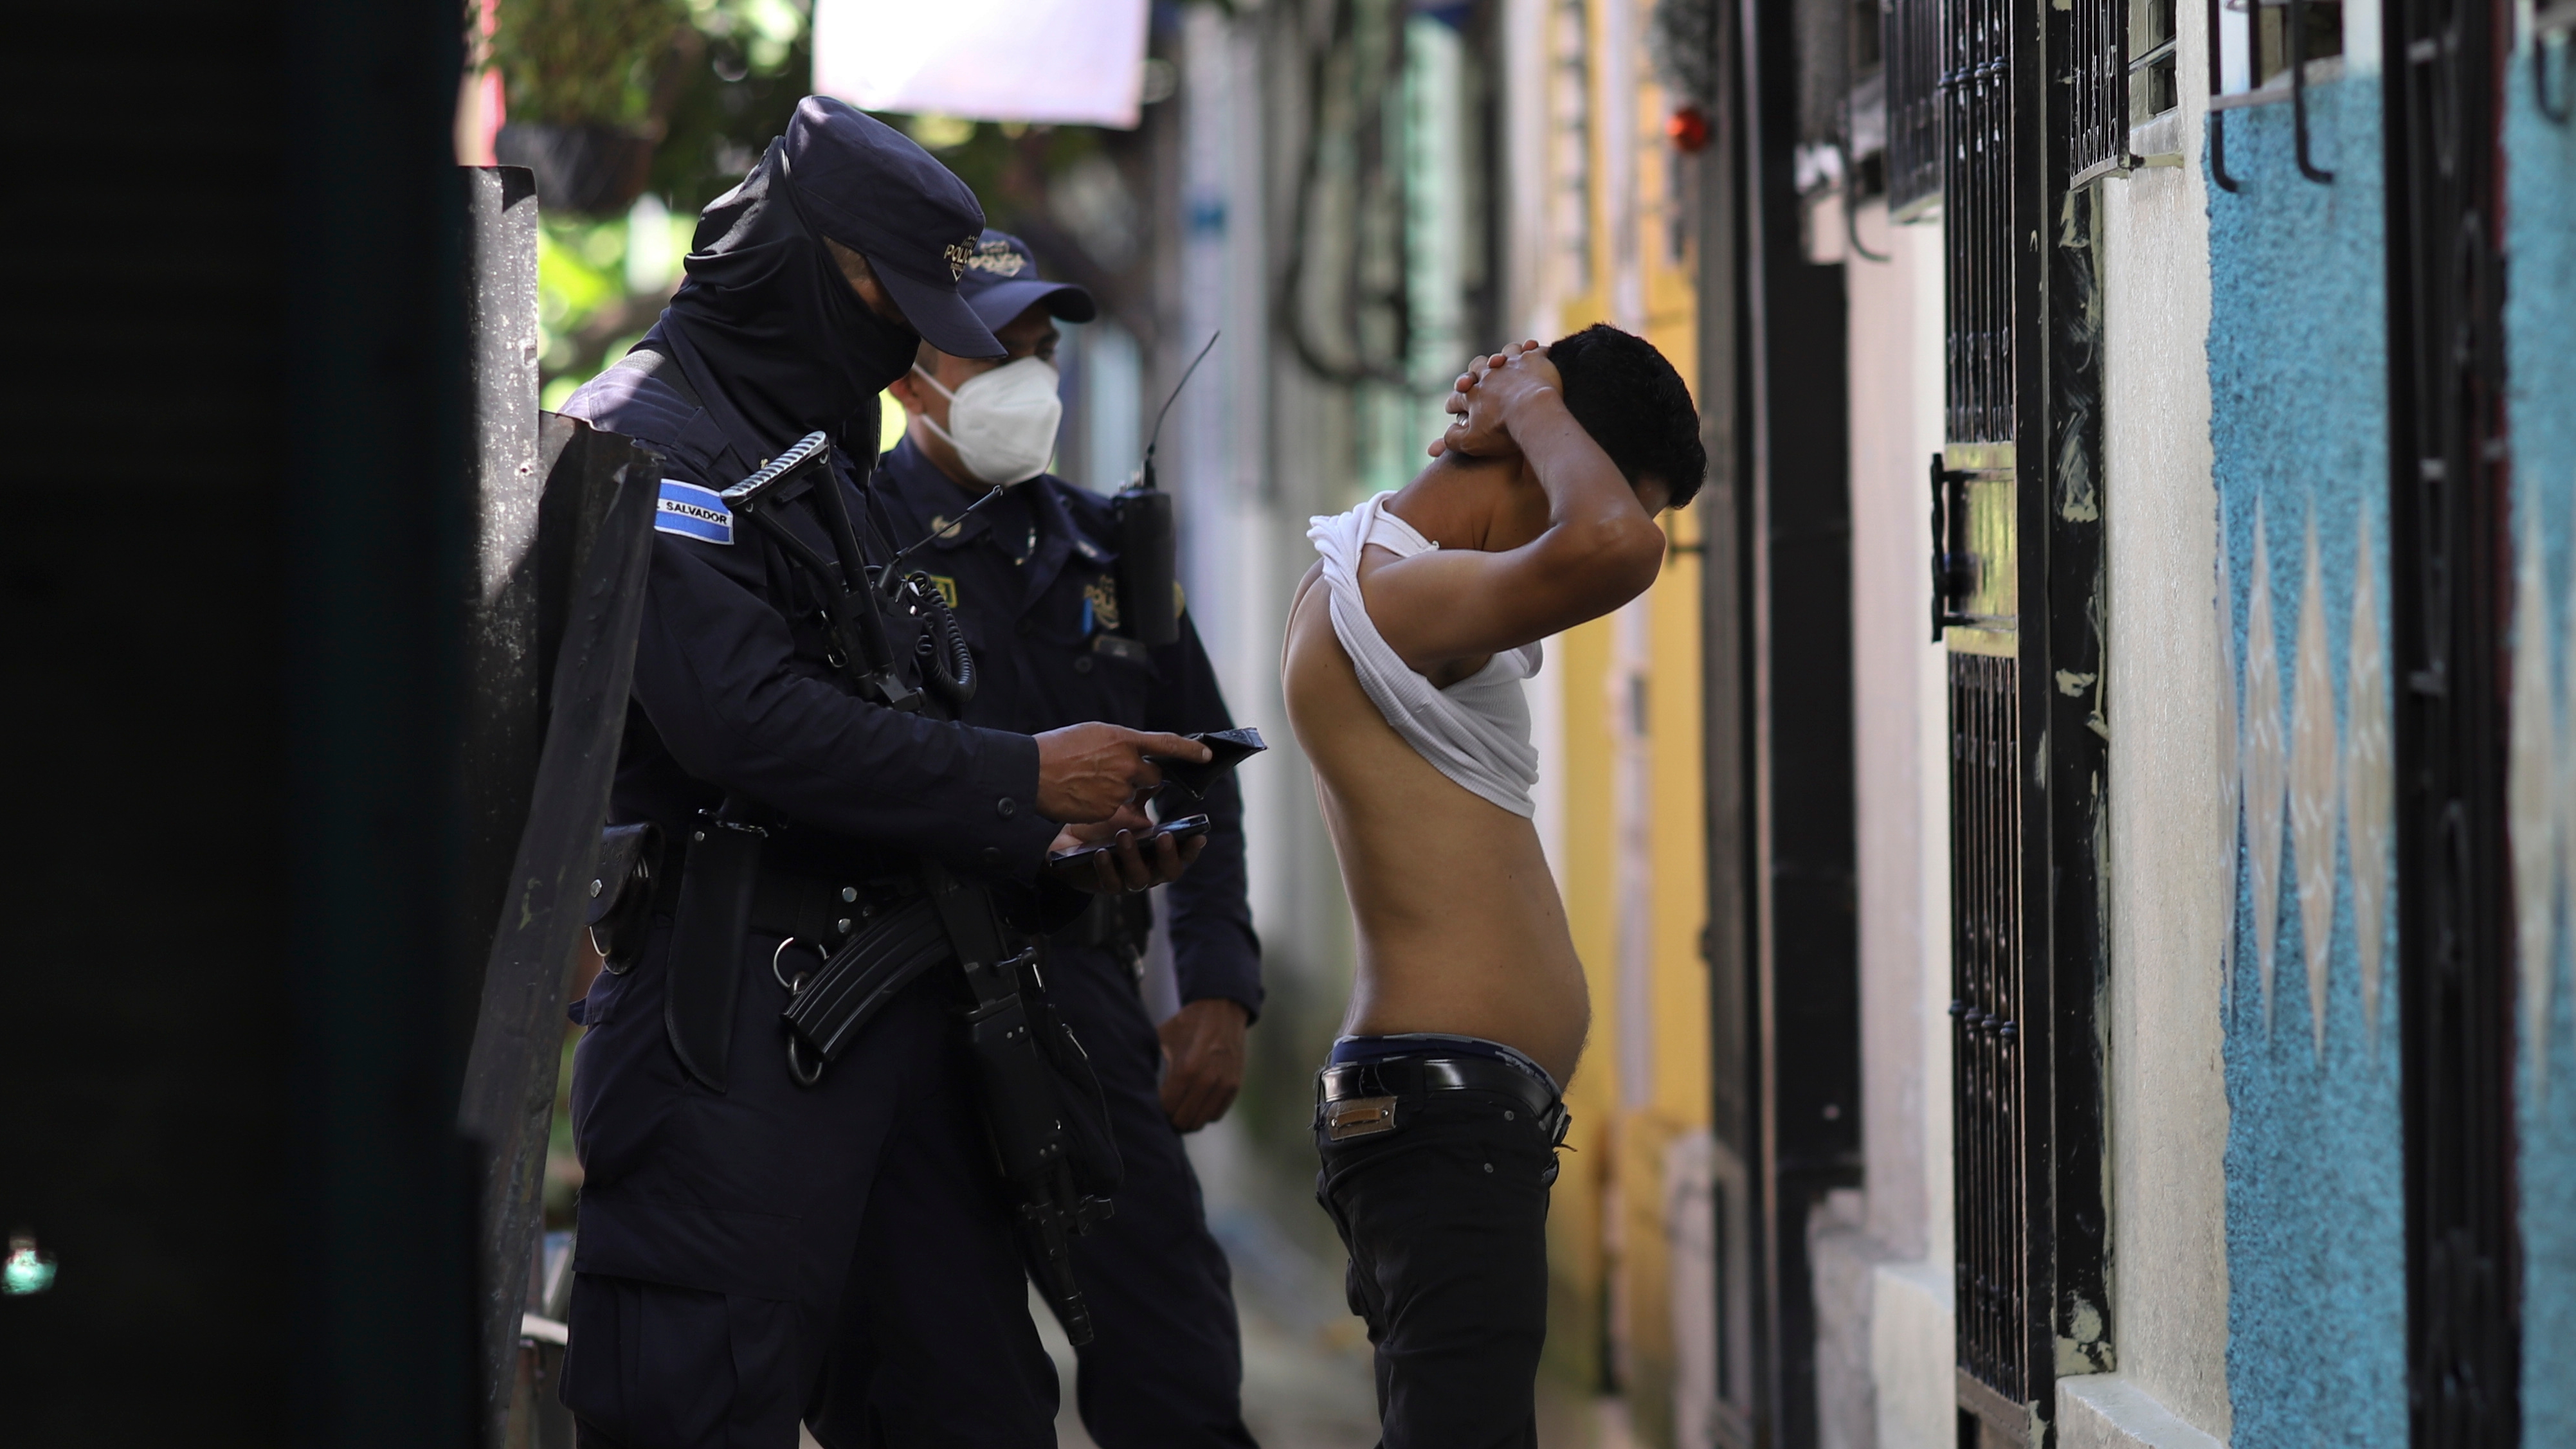 El lado B de la guerra contra las pandillas de Bukele en El Salvador: amenazas, abusos y miedo a las autoridades